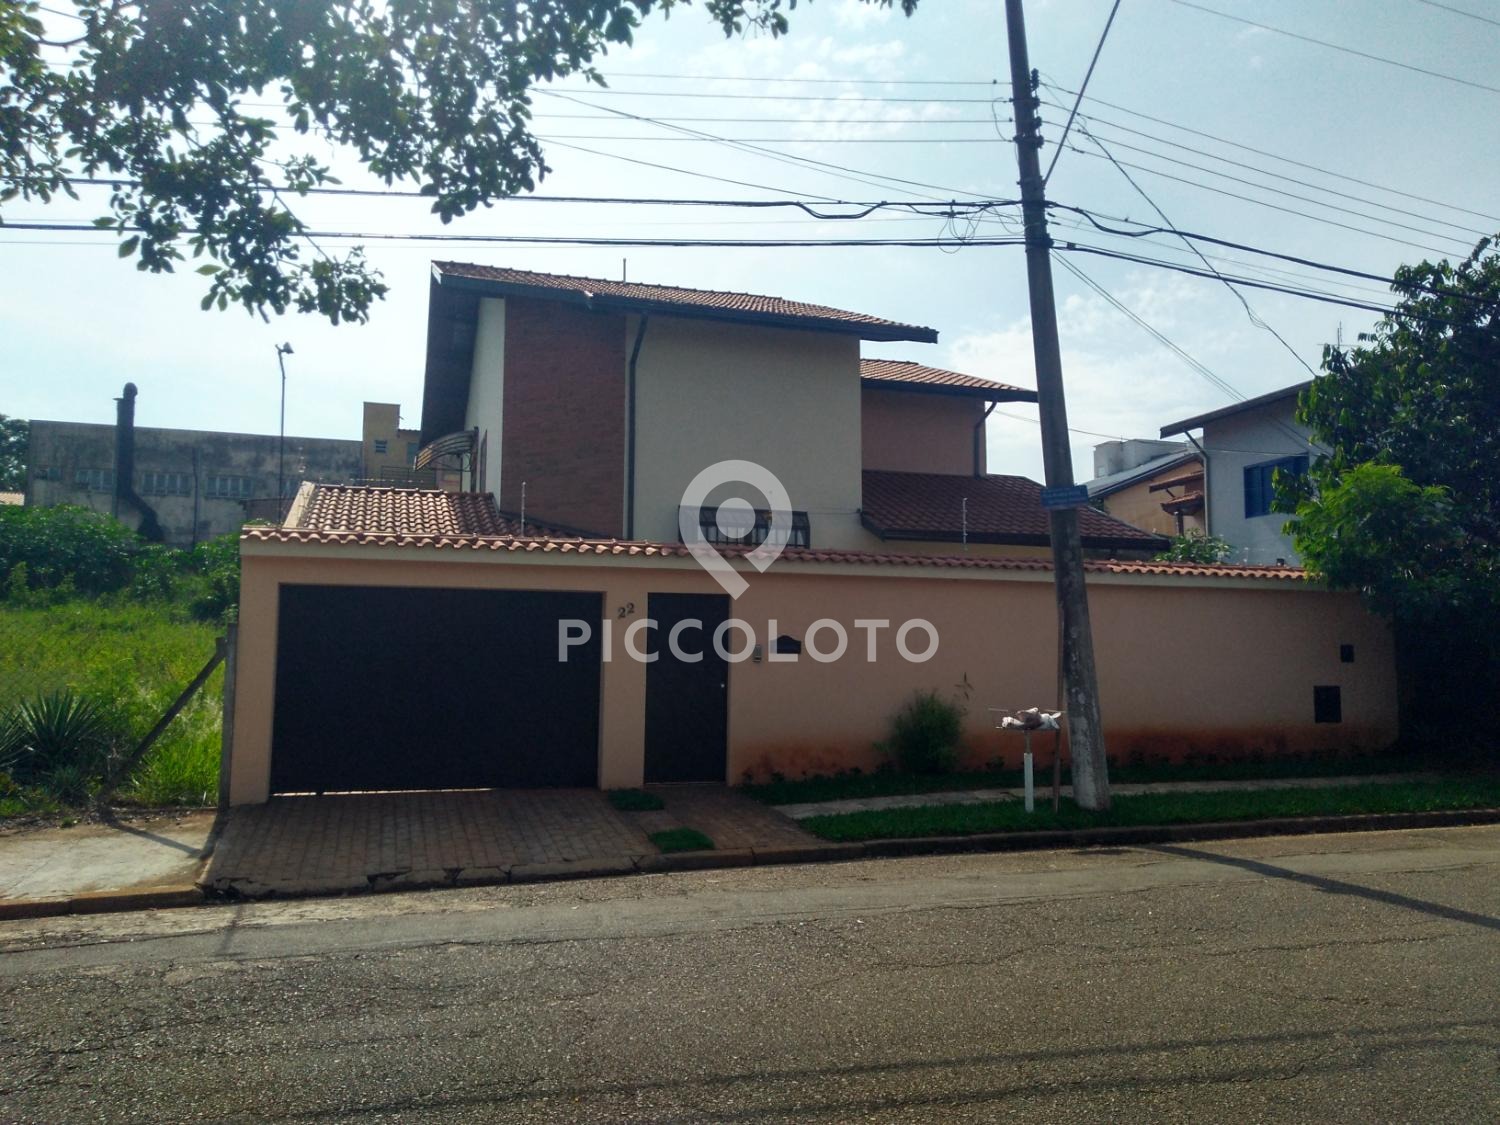 Piccoloto - Casa para alugar no Parque das Universidades em Campinas